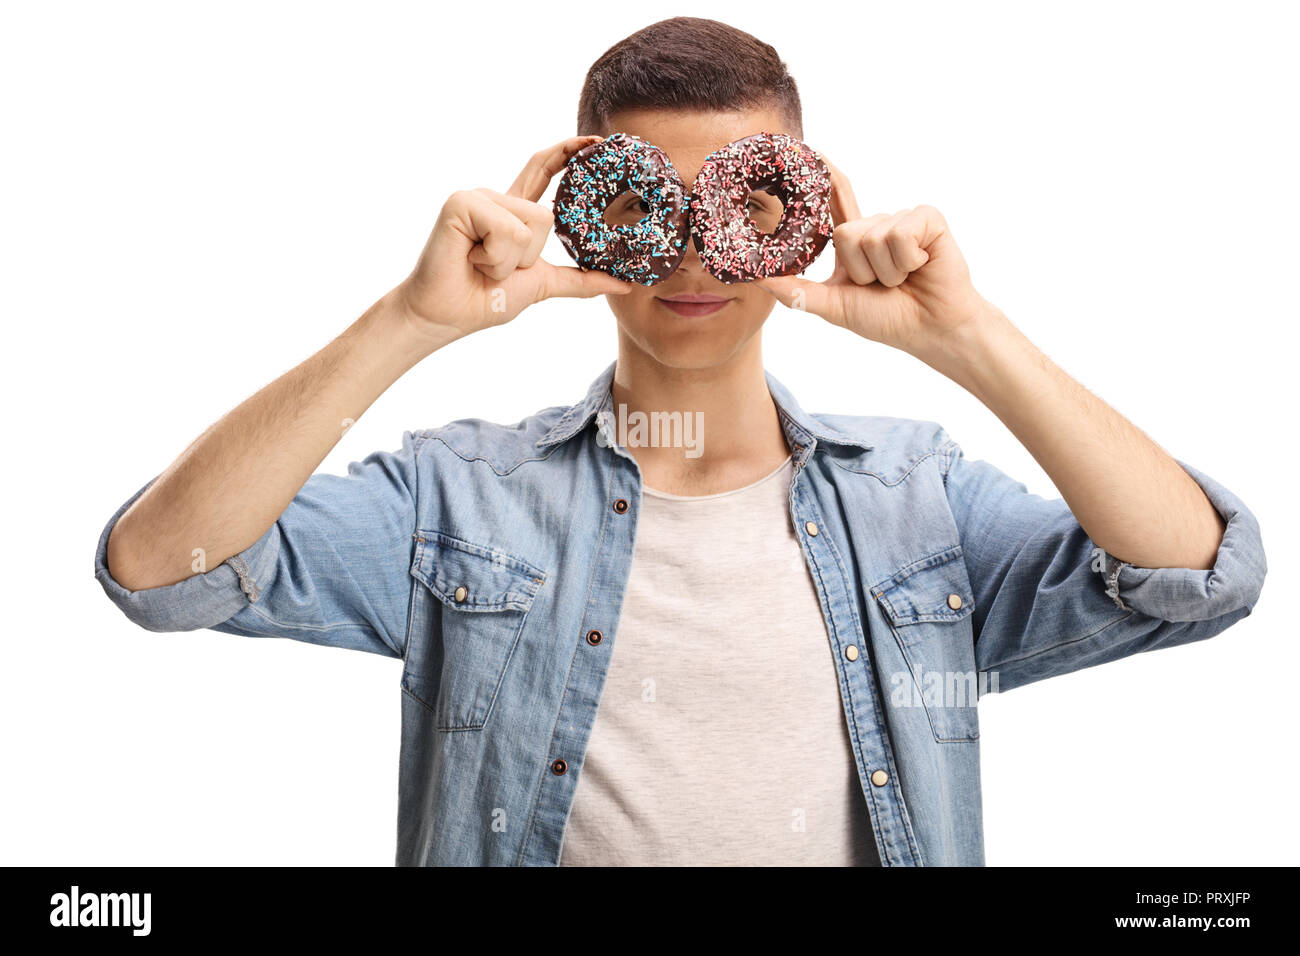 Junge männliche Holding donuts vor seinen Augen auf weißem Hintergrund Stockfoto